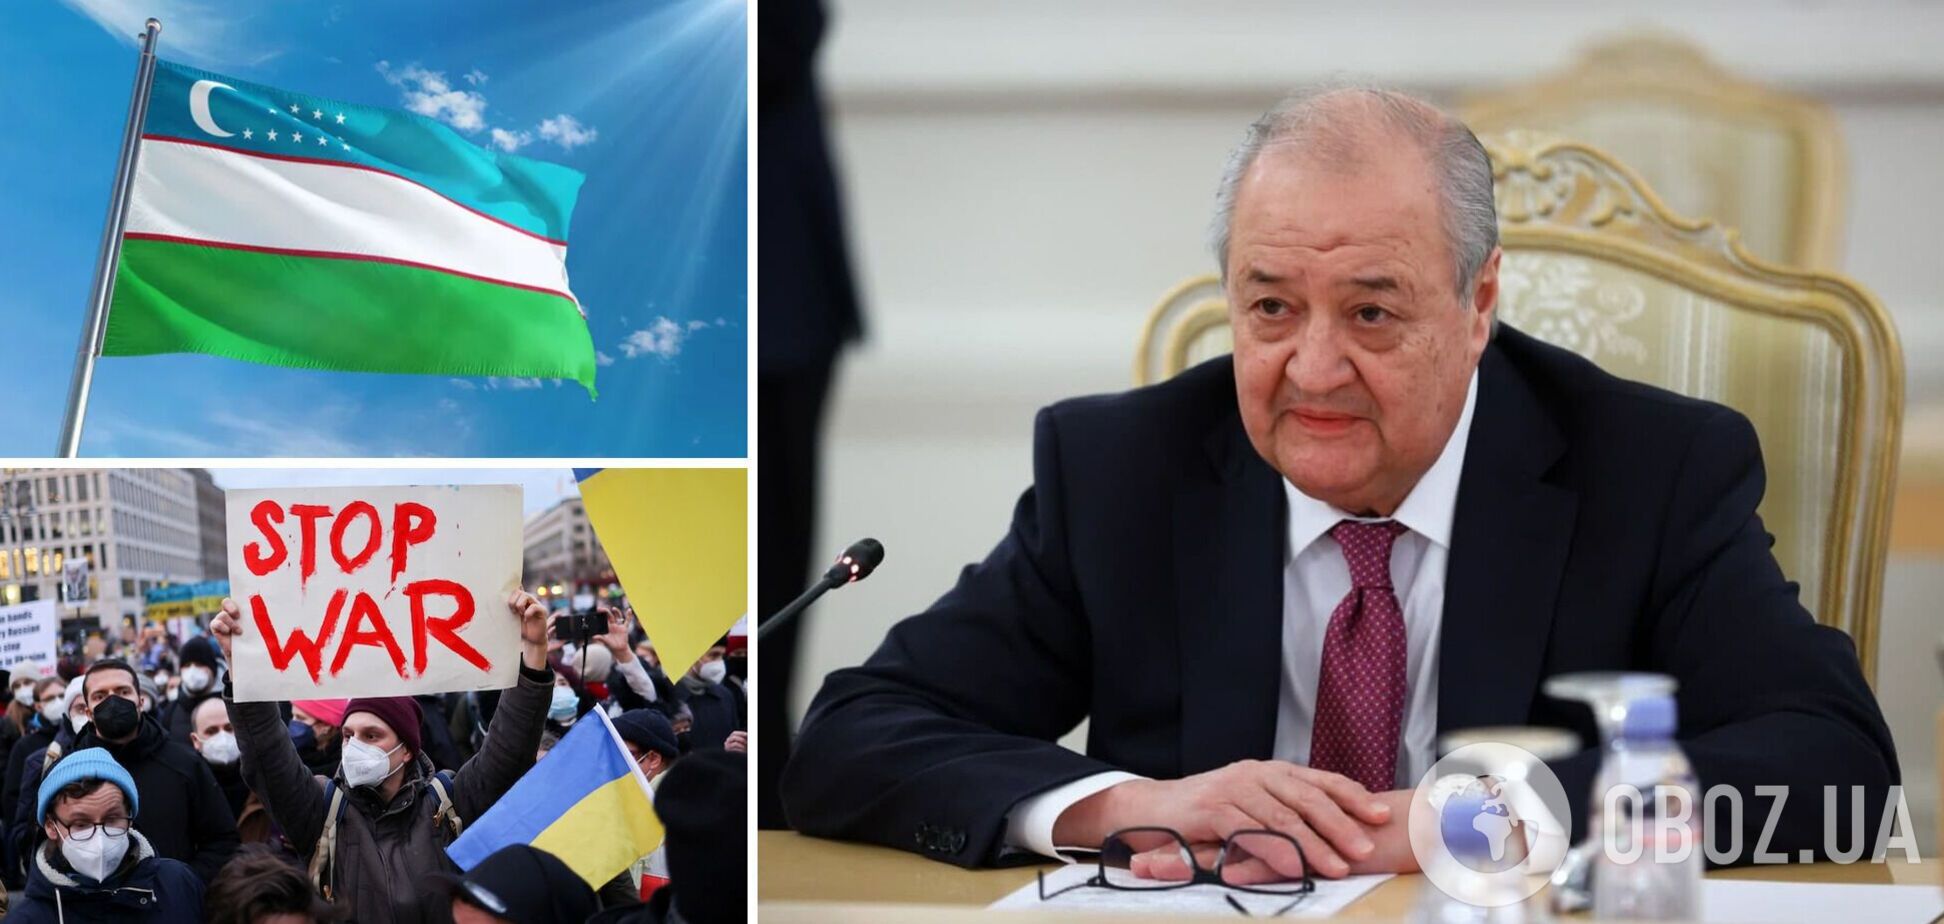 'Потрібно негайно припинити насильство': в Узбекистані виступили проти агресії Росії щодо України